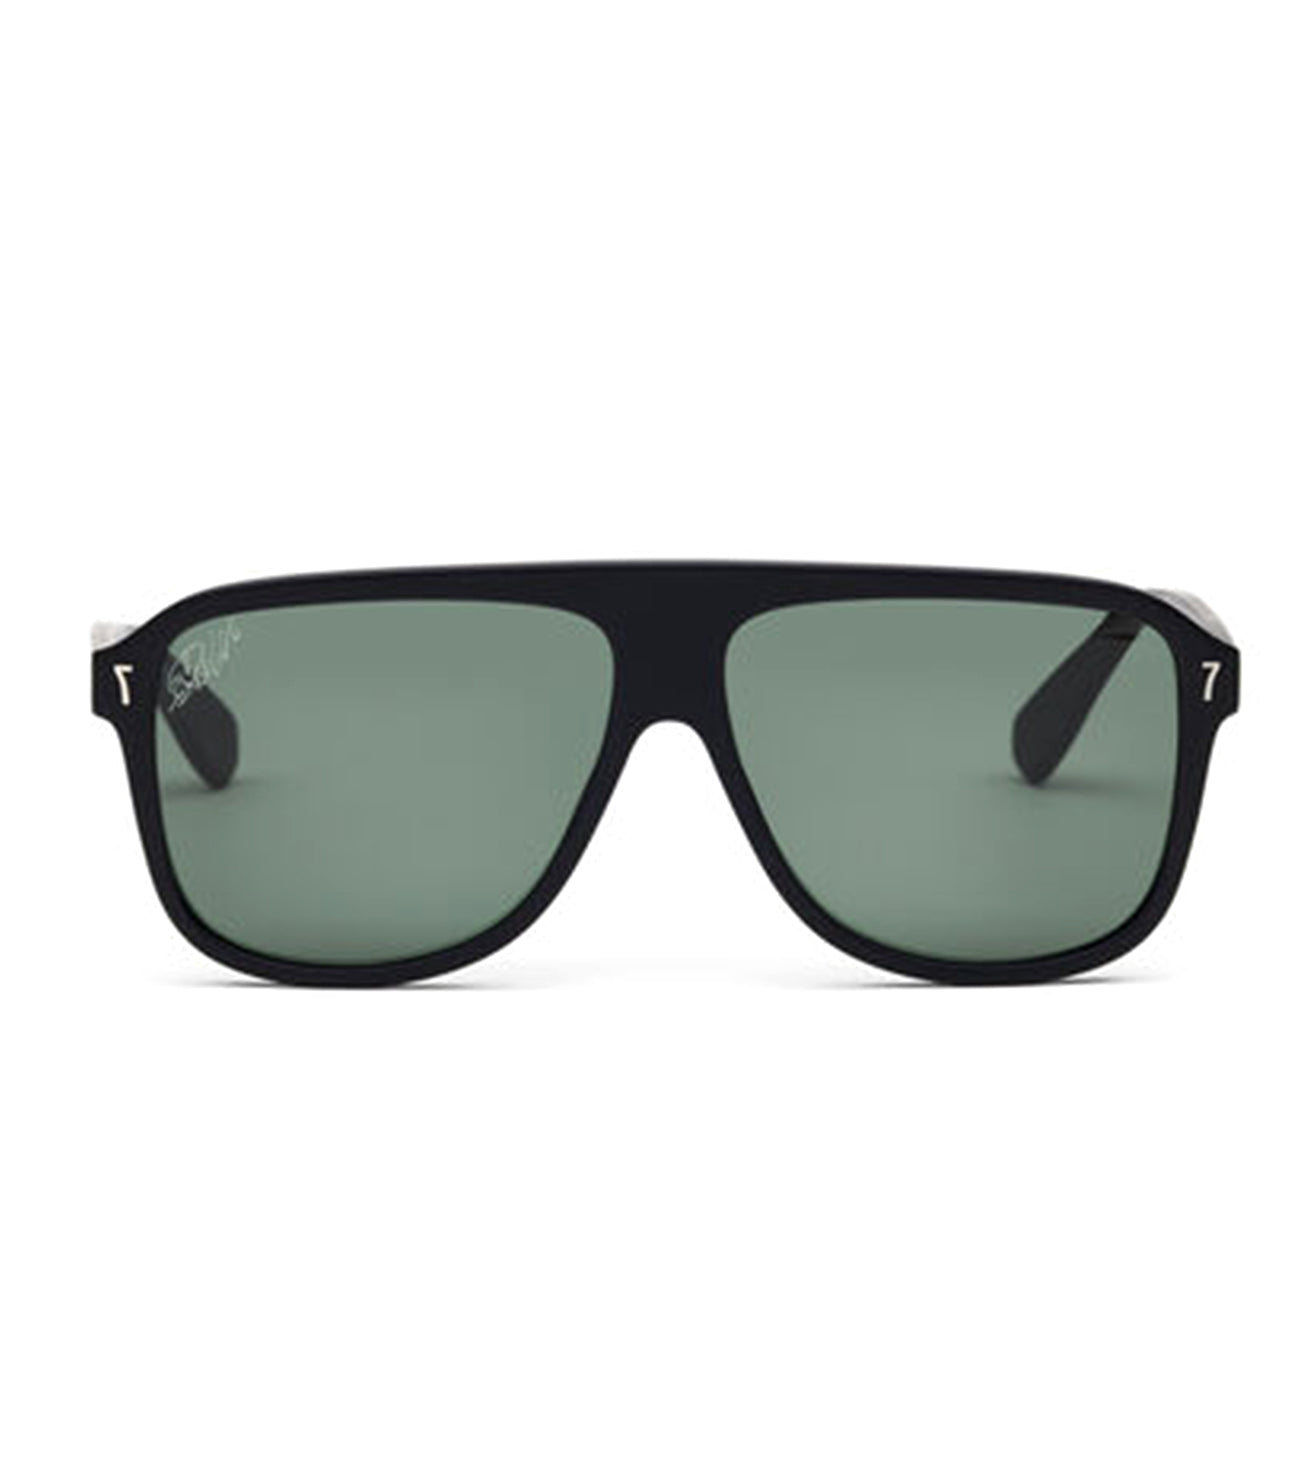 CR7 Unisex Grey Square Sunglasses